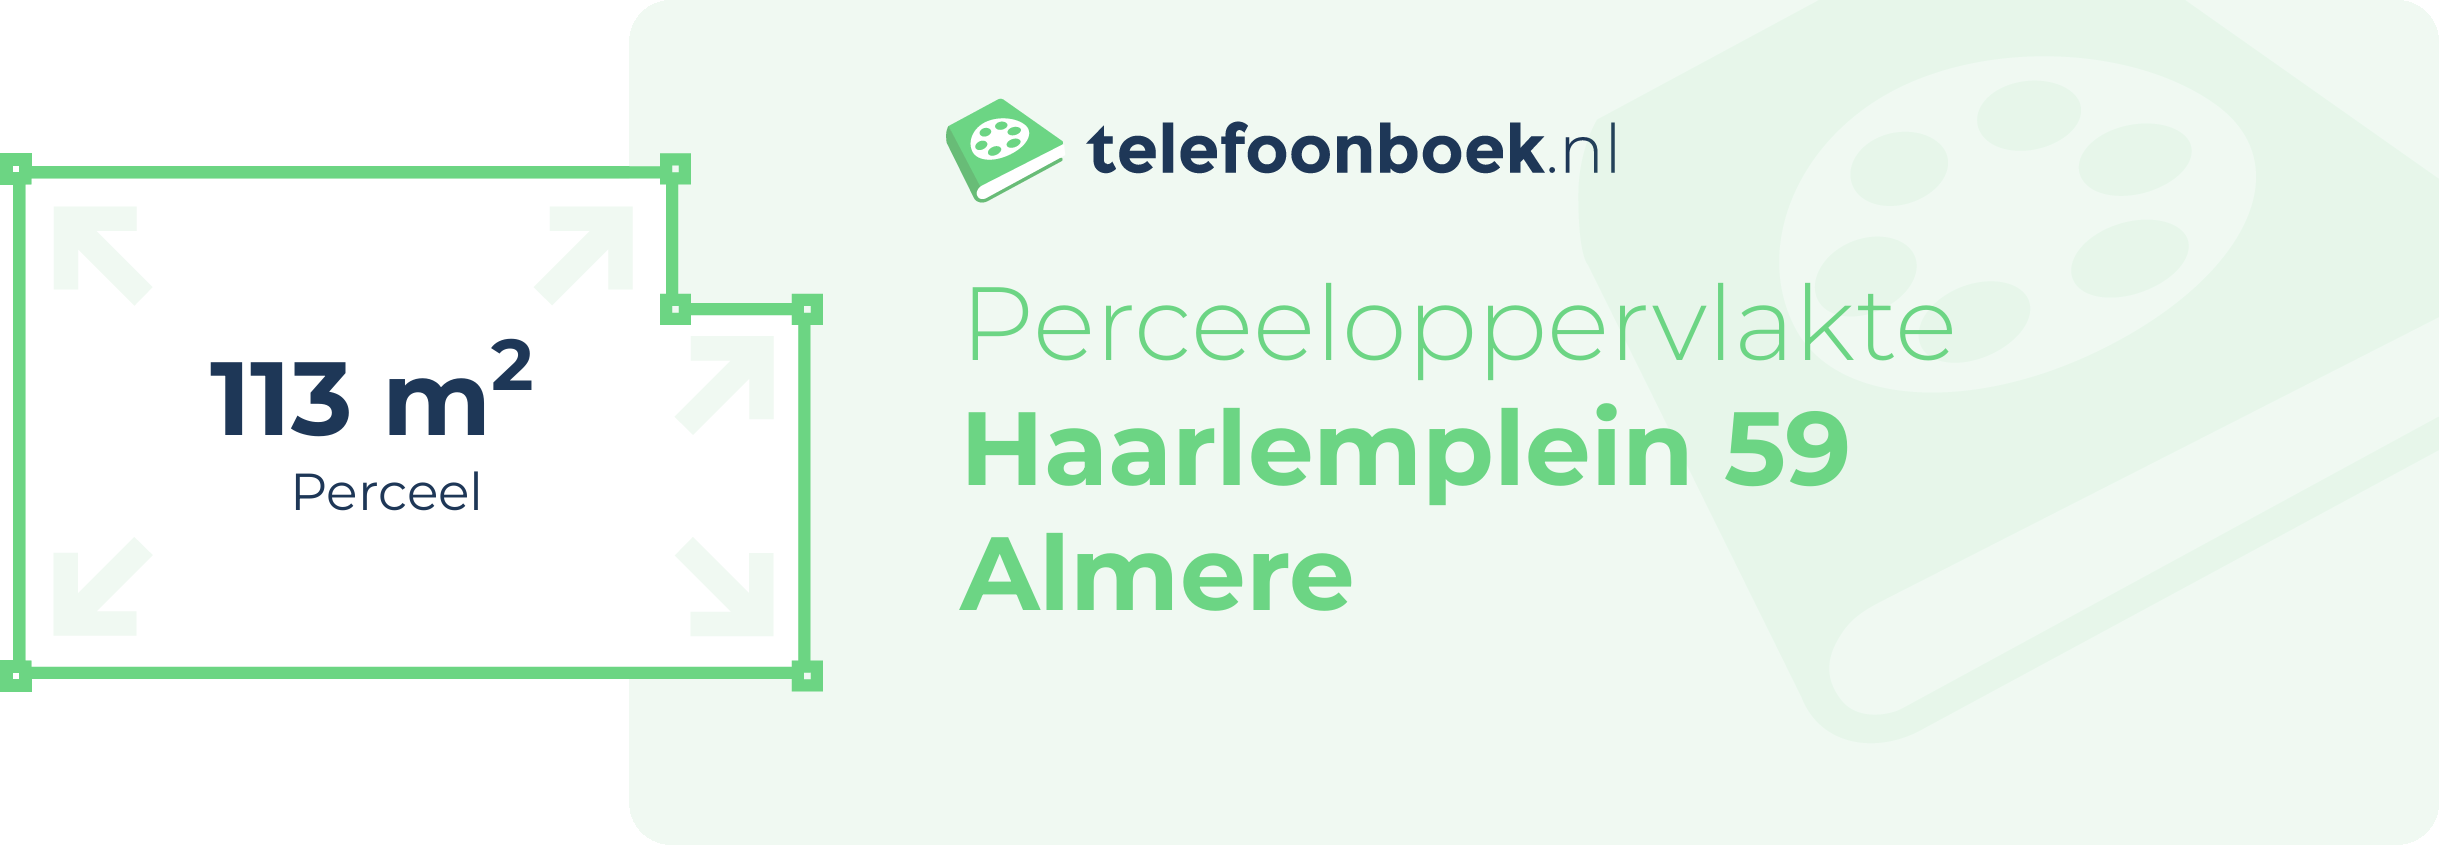 Perceeloppervlakte Haarlemplein 59 Almere